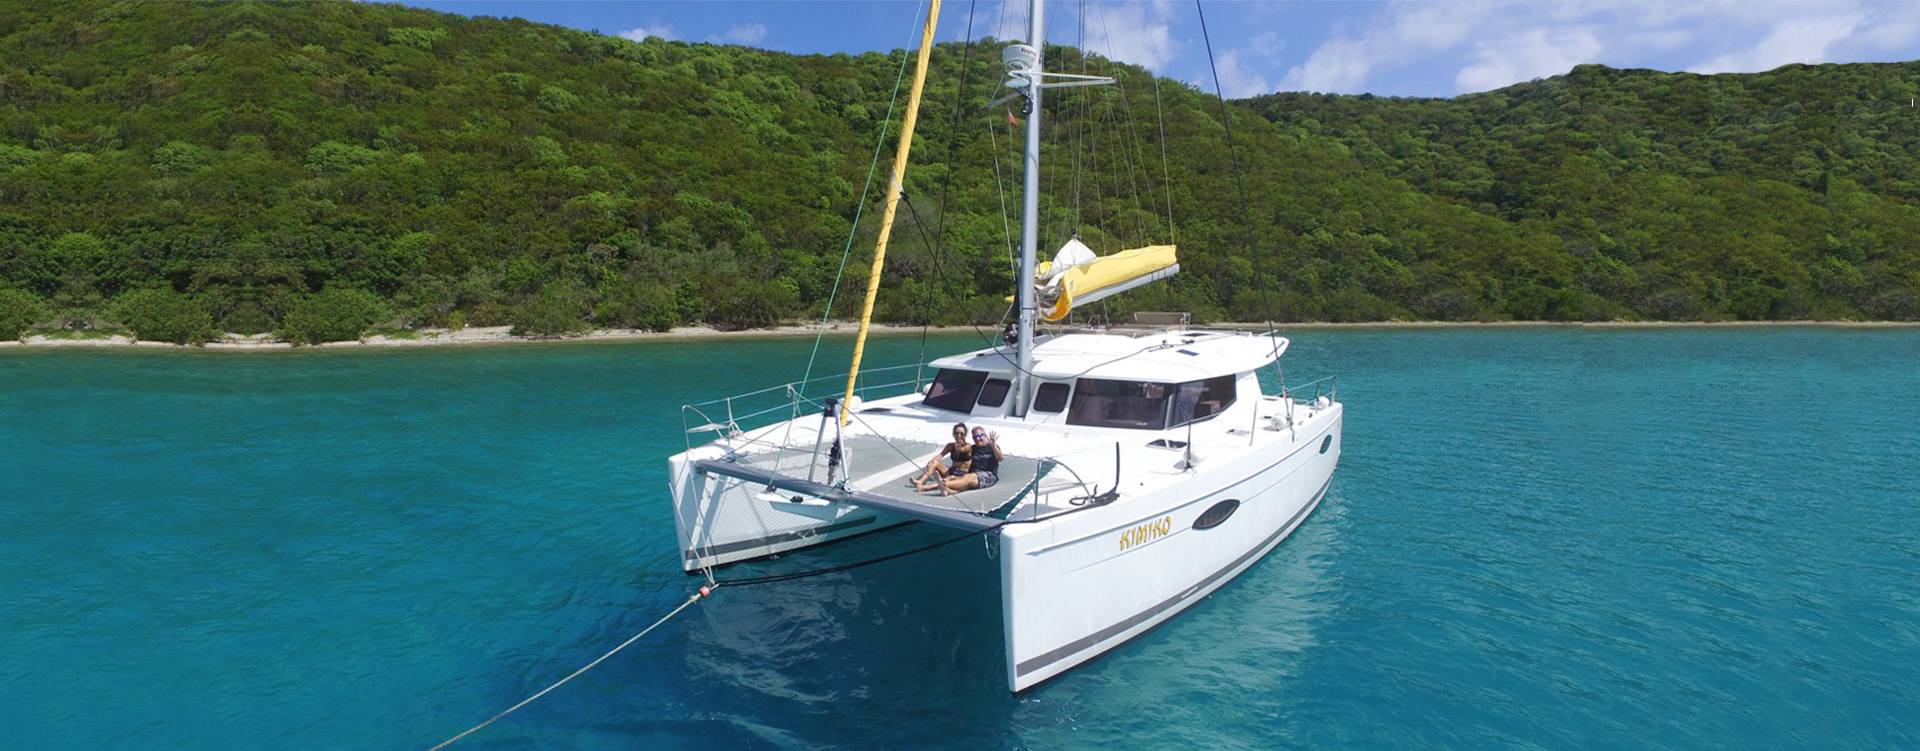 Kimiko, FP Helia 44 2015 Barefoot Yacht Charters